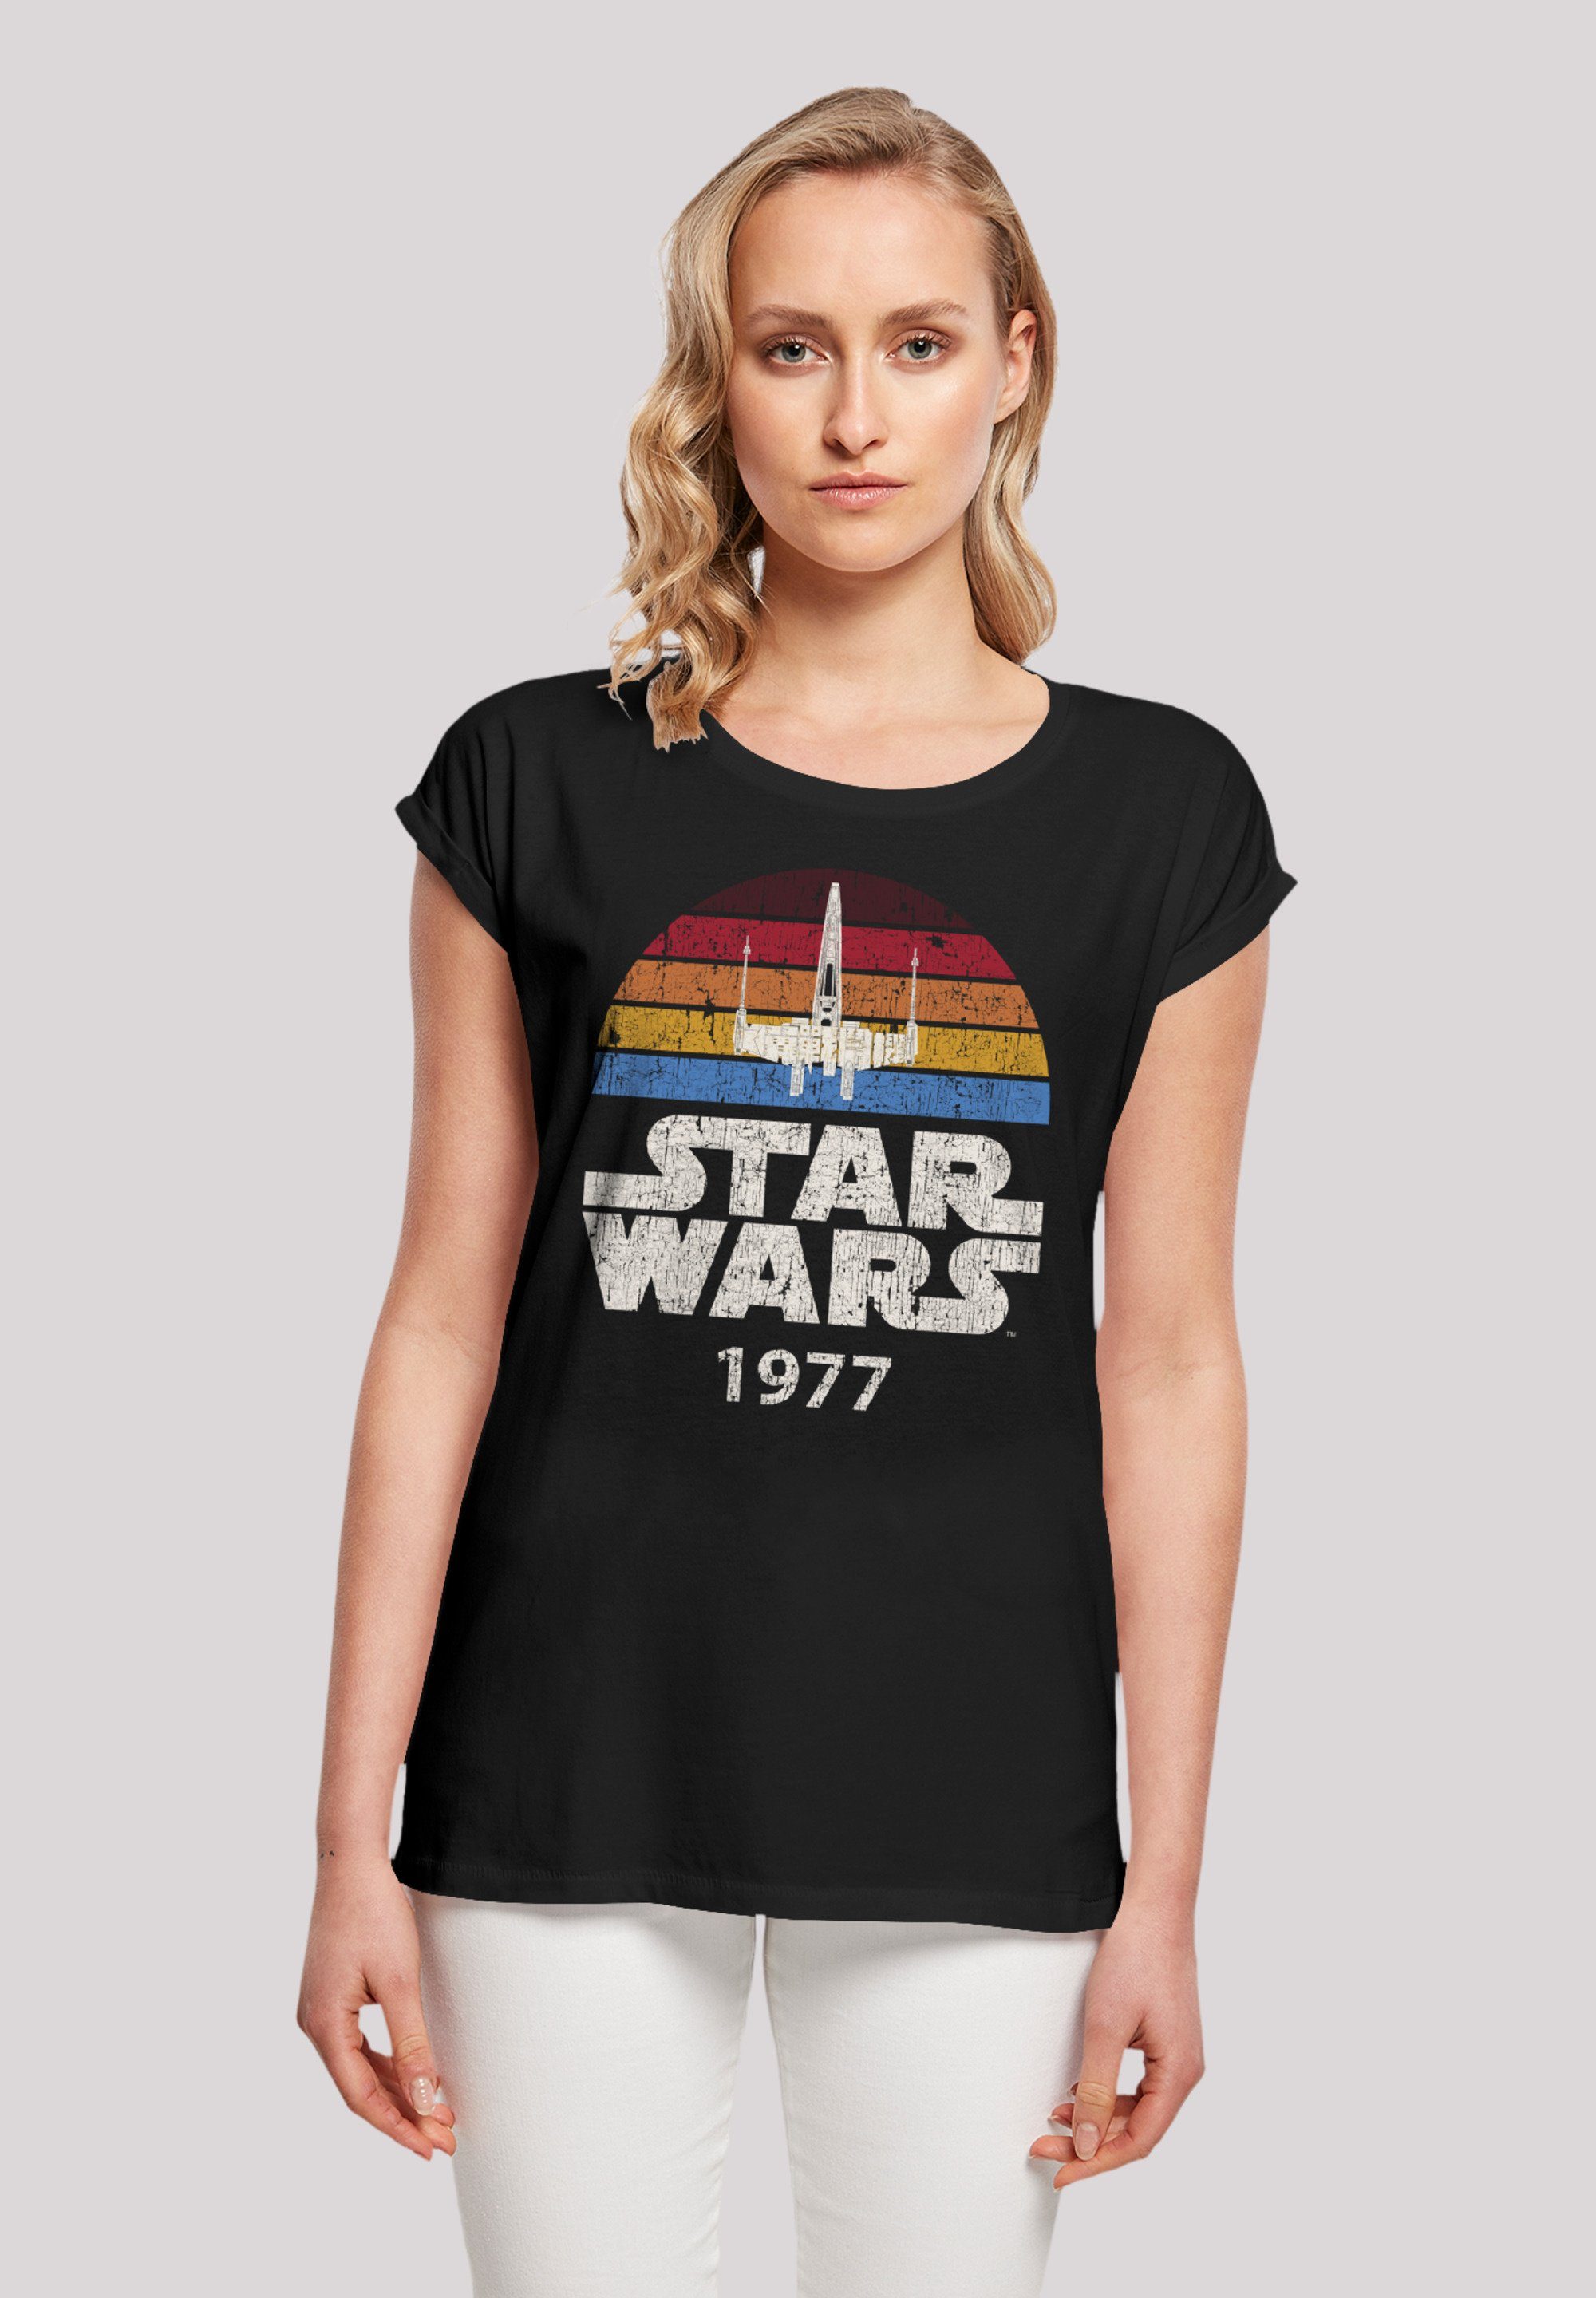 Wars Premium Star 1977 F4NT4STIC Trip T-Shirt Qualität X-Wing